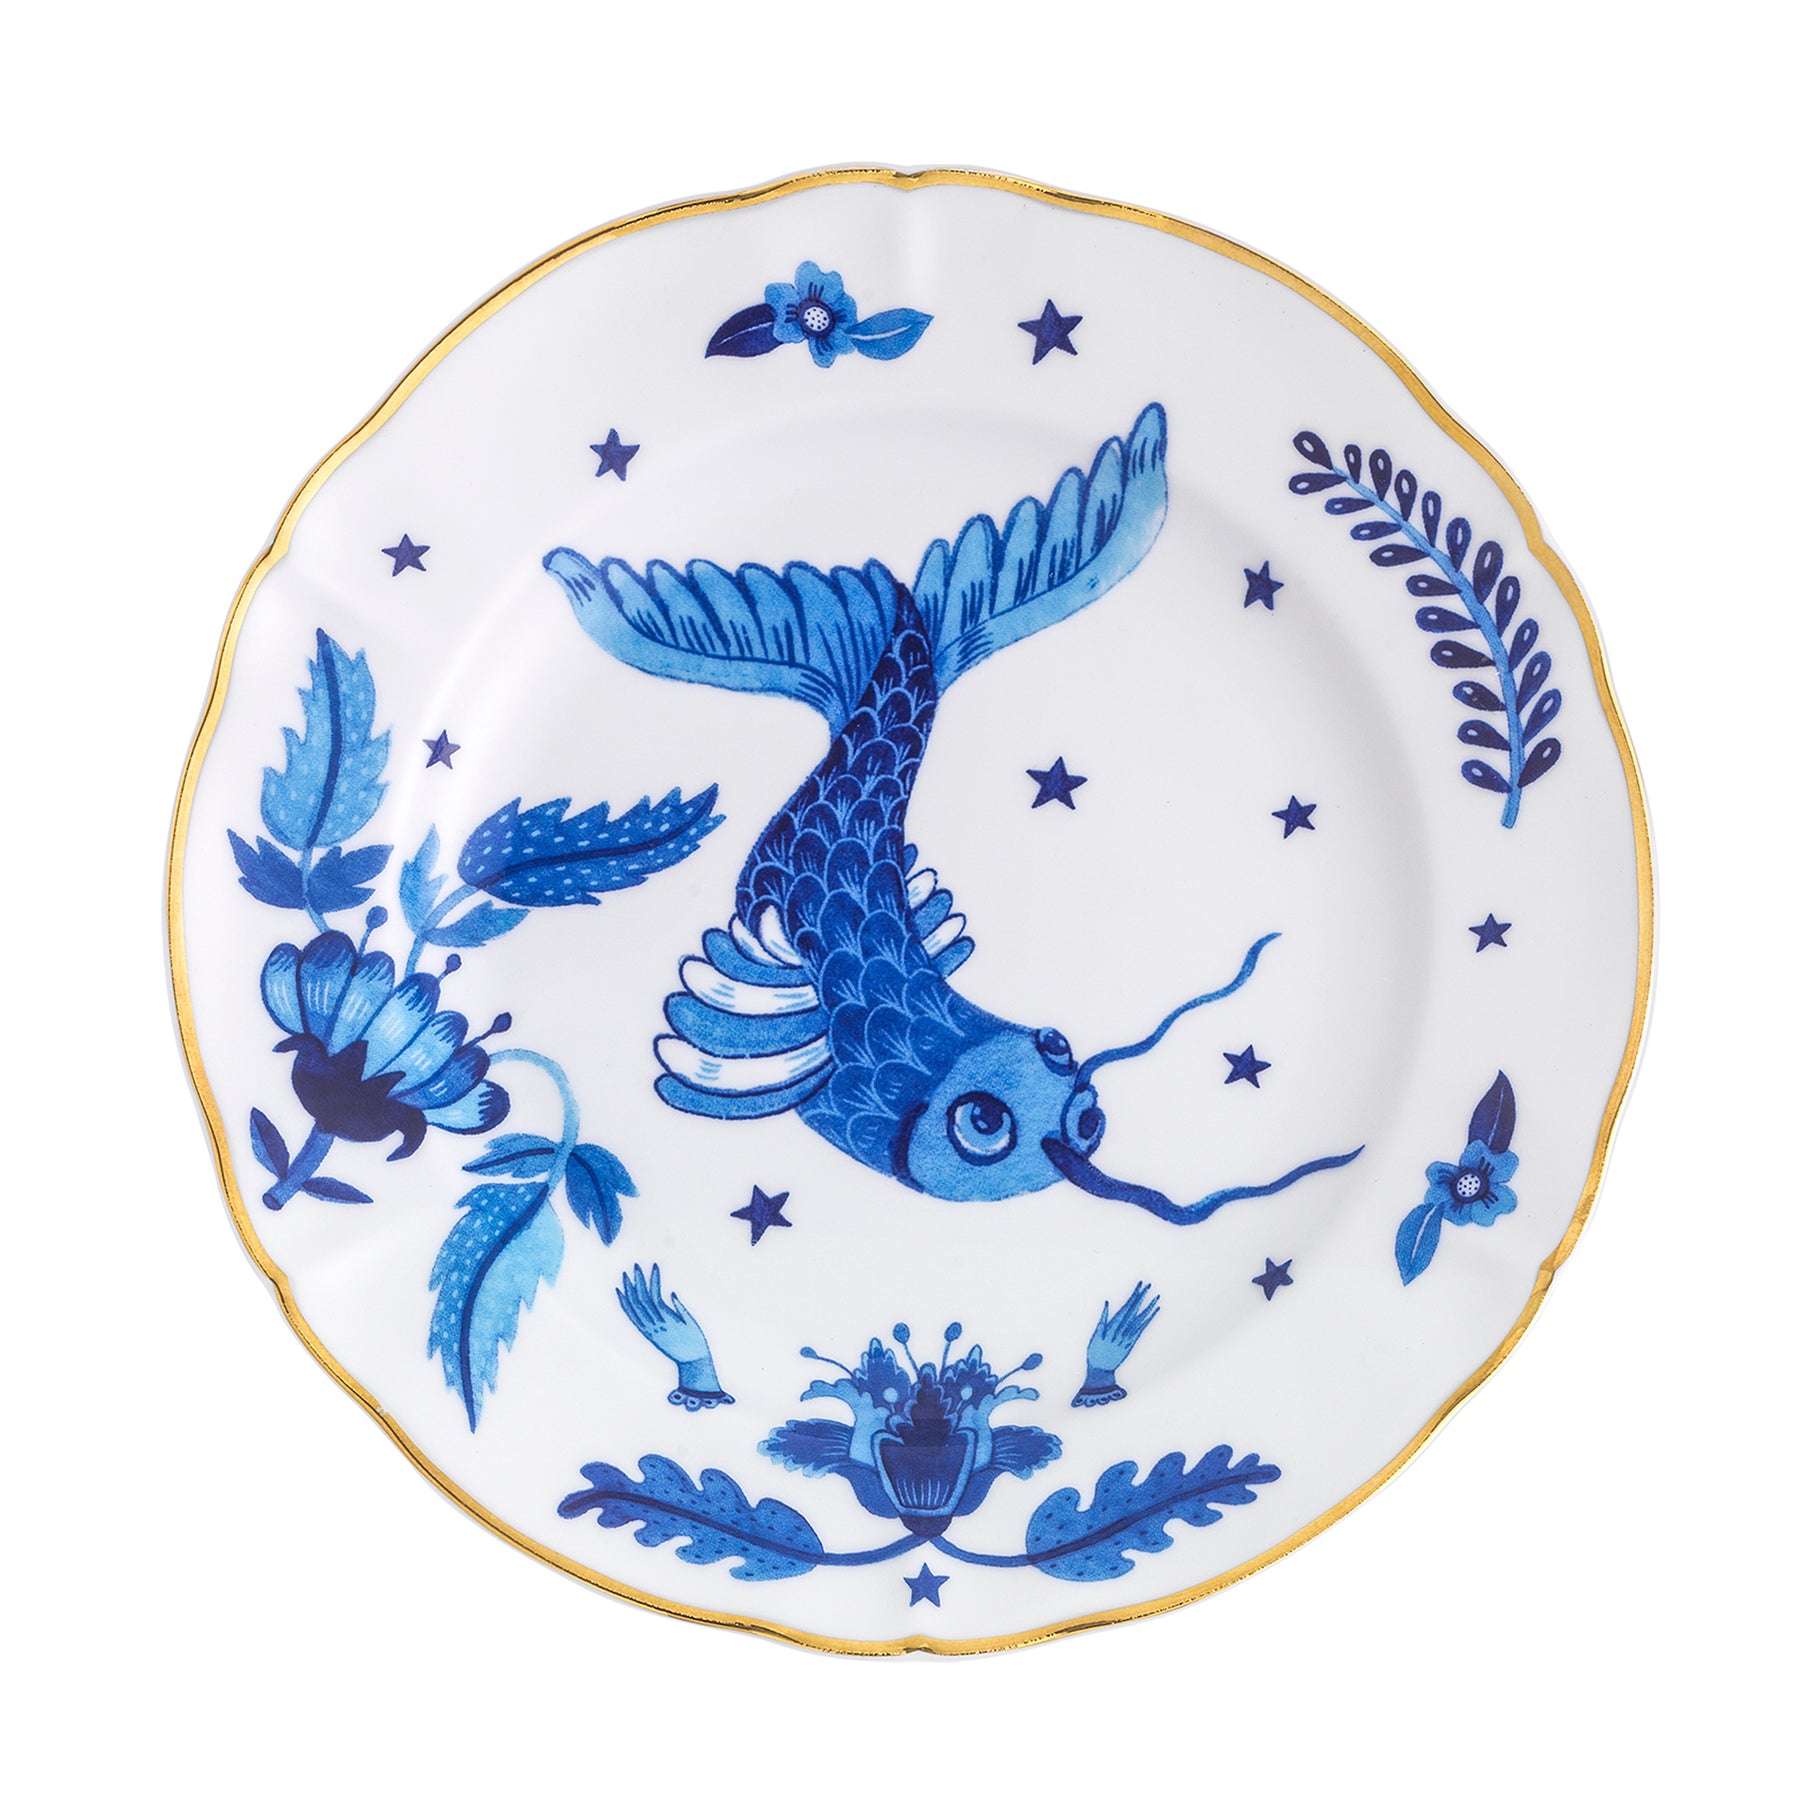 FISH Porcelain Plate. 20 cm